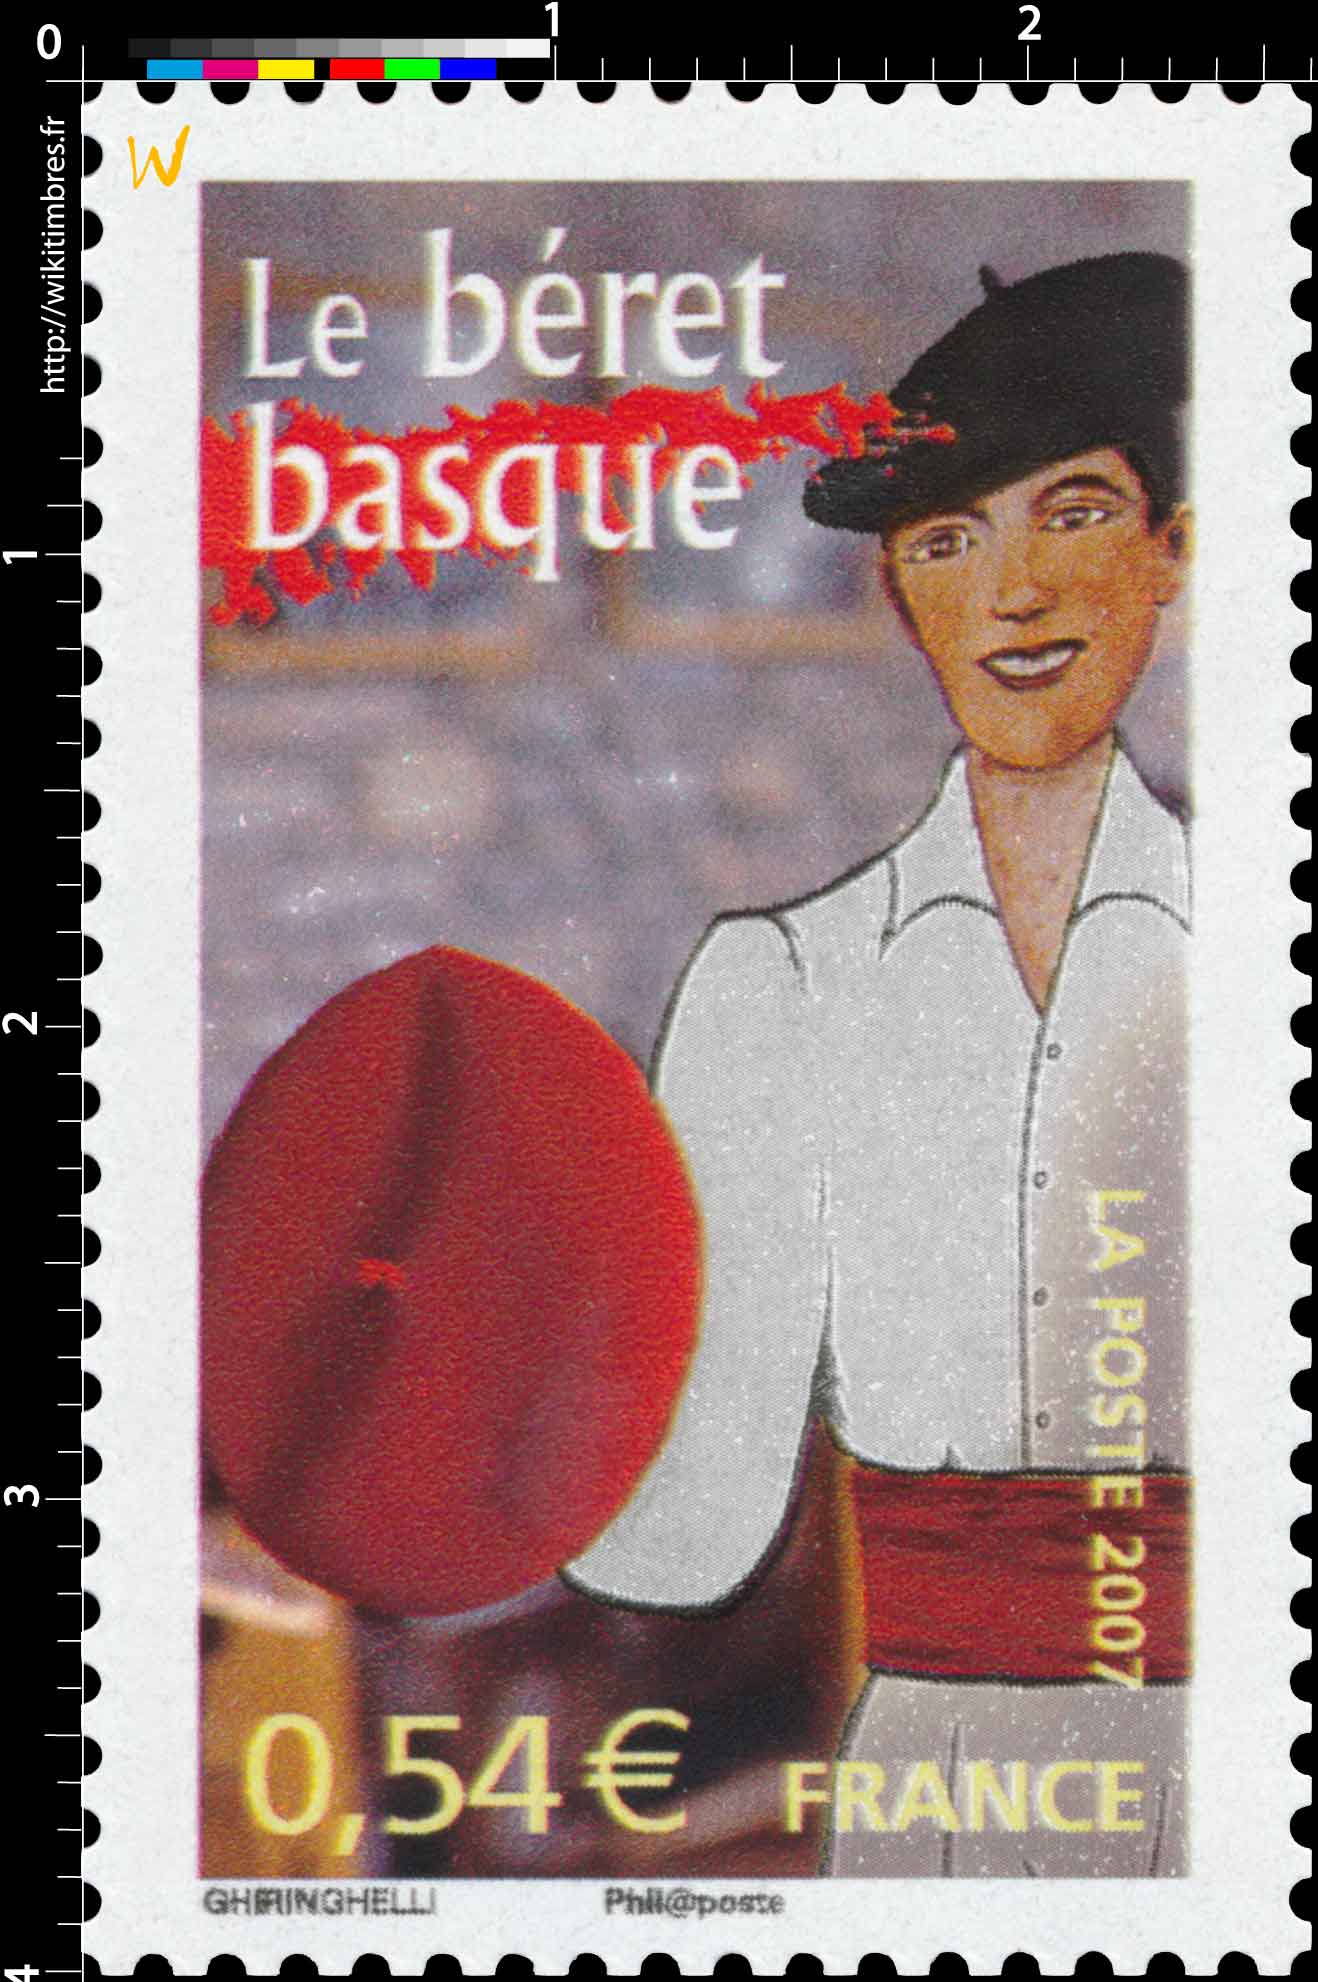 2007 Le béret basque